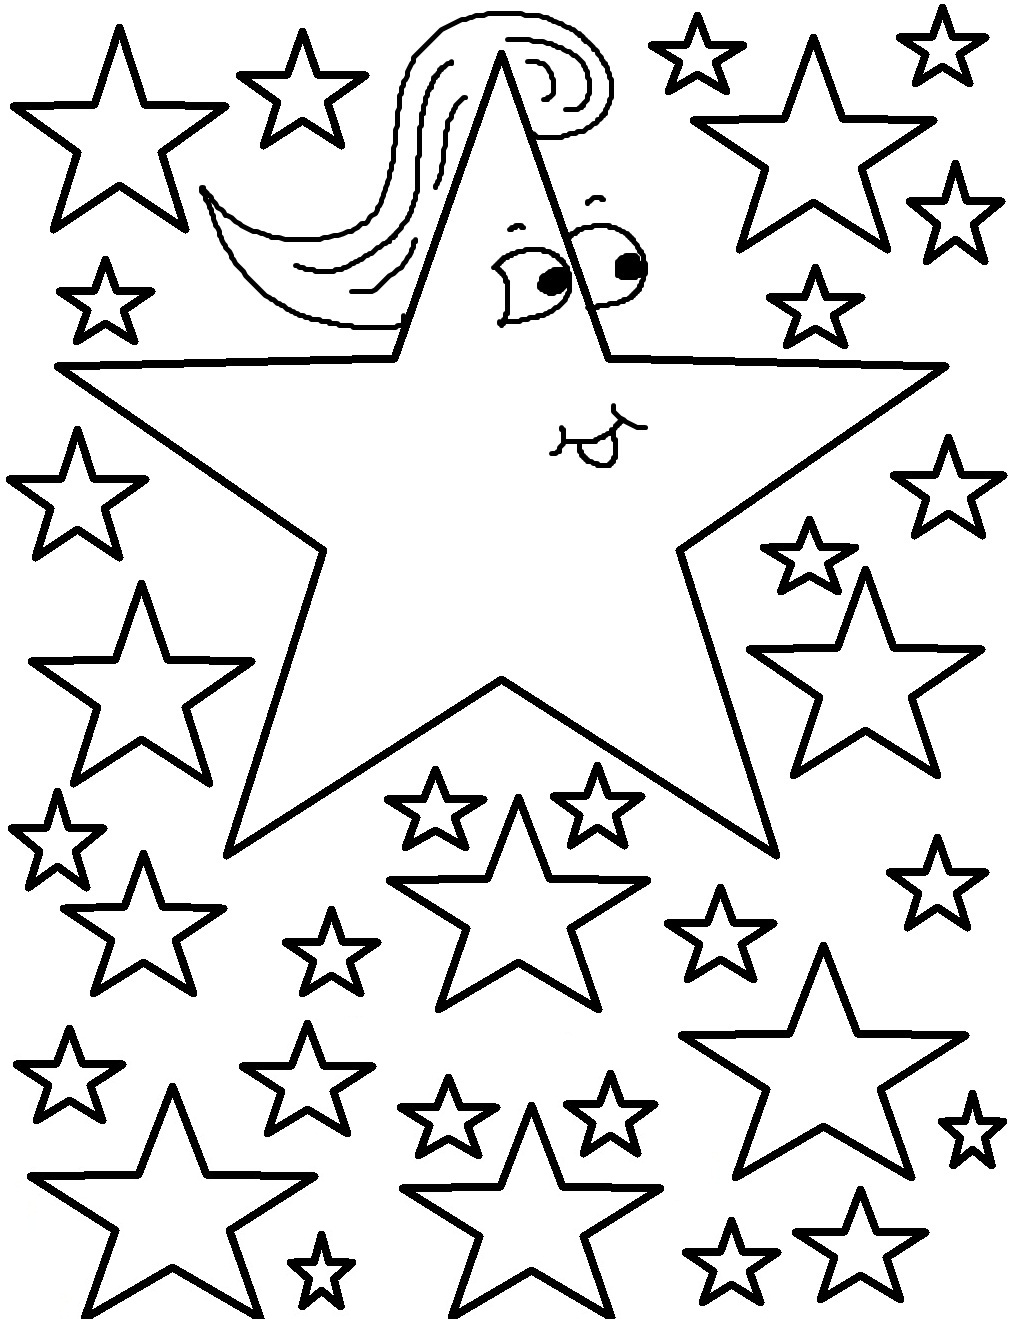 Tổng hợp các bức tranh tô màu ngôi sao đẹp cho bé - [Kích thước hình ảnh: 1019x1319 px]